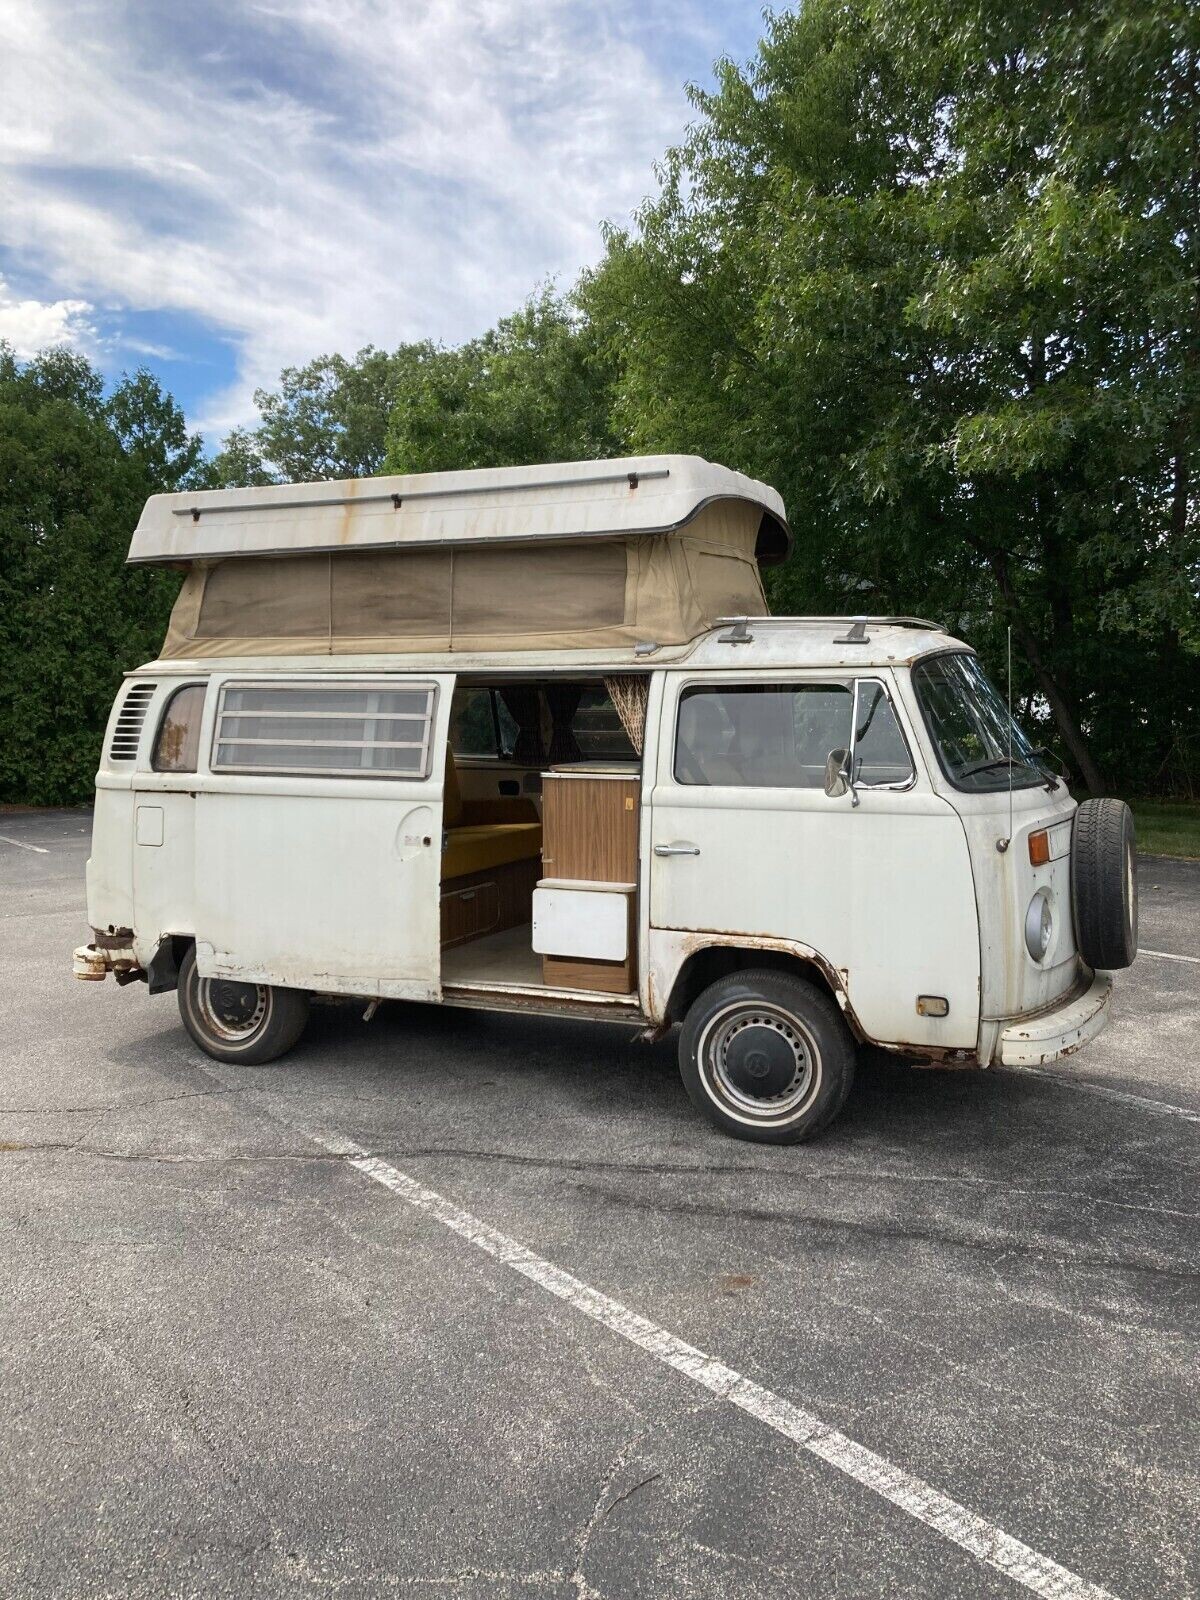 Classic Volkswagen Bulli pop-top camper van built up to life size